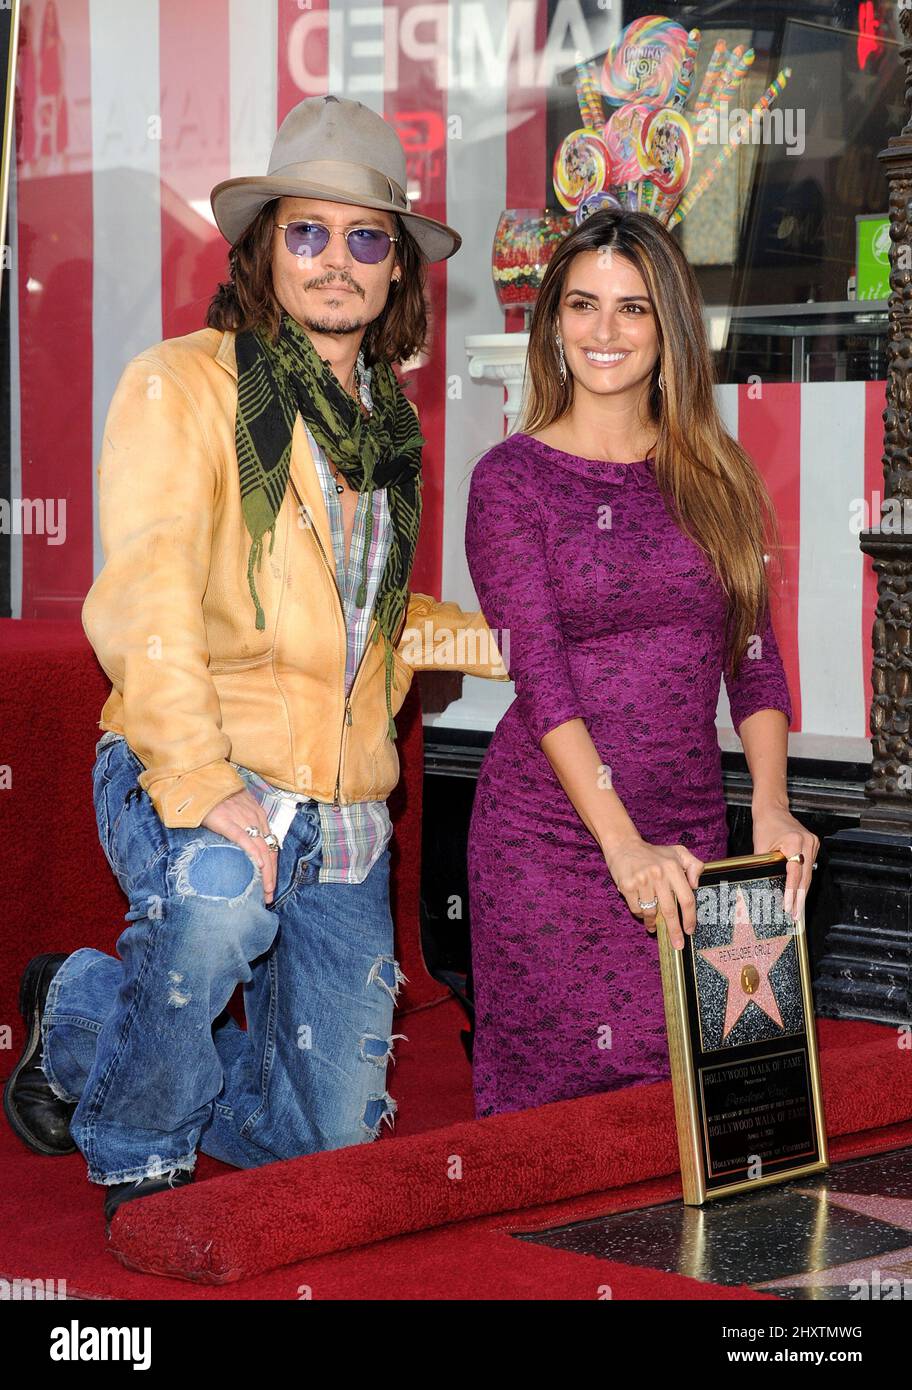 Die spanische Schauspielerin und Oscar-Preisträgerin Penelope Cruz (R) posiert mit dem US-Schauspieler Johnny Depp (L), als sie am 01. April 2011 auf dem Hollywood Walk of Fame in Hollywood, Kalifornien, USA, mit einem Stern geehrt wird. Cruz erhielt den 2436.-Sterne-Stern auf dem Hollywood Walk of Fame. Stockfoto